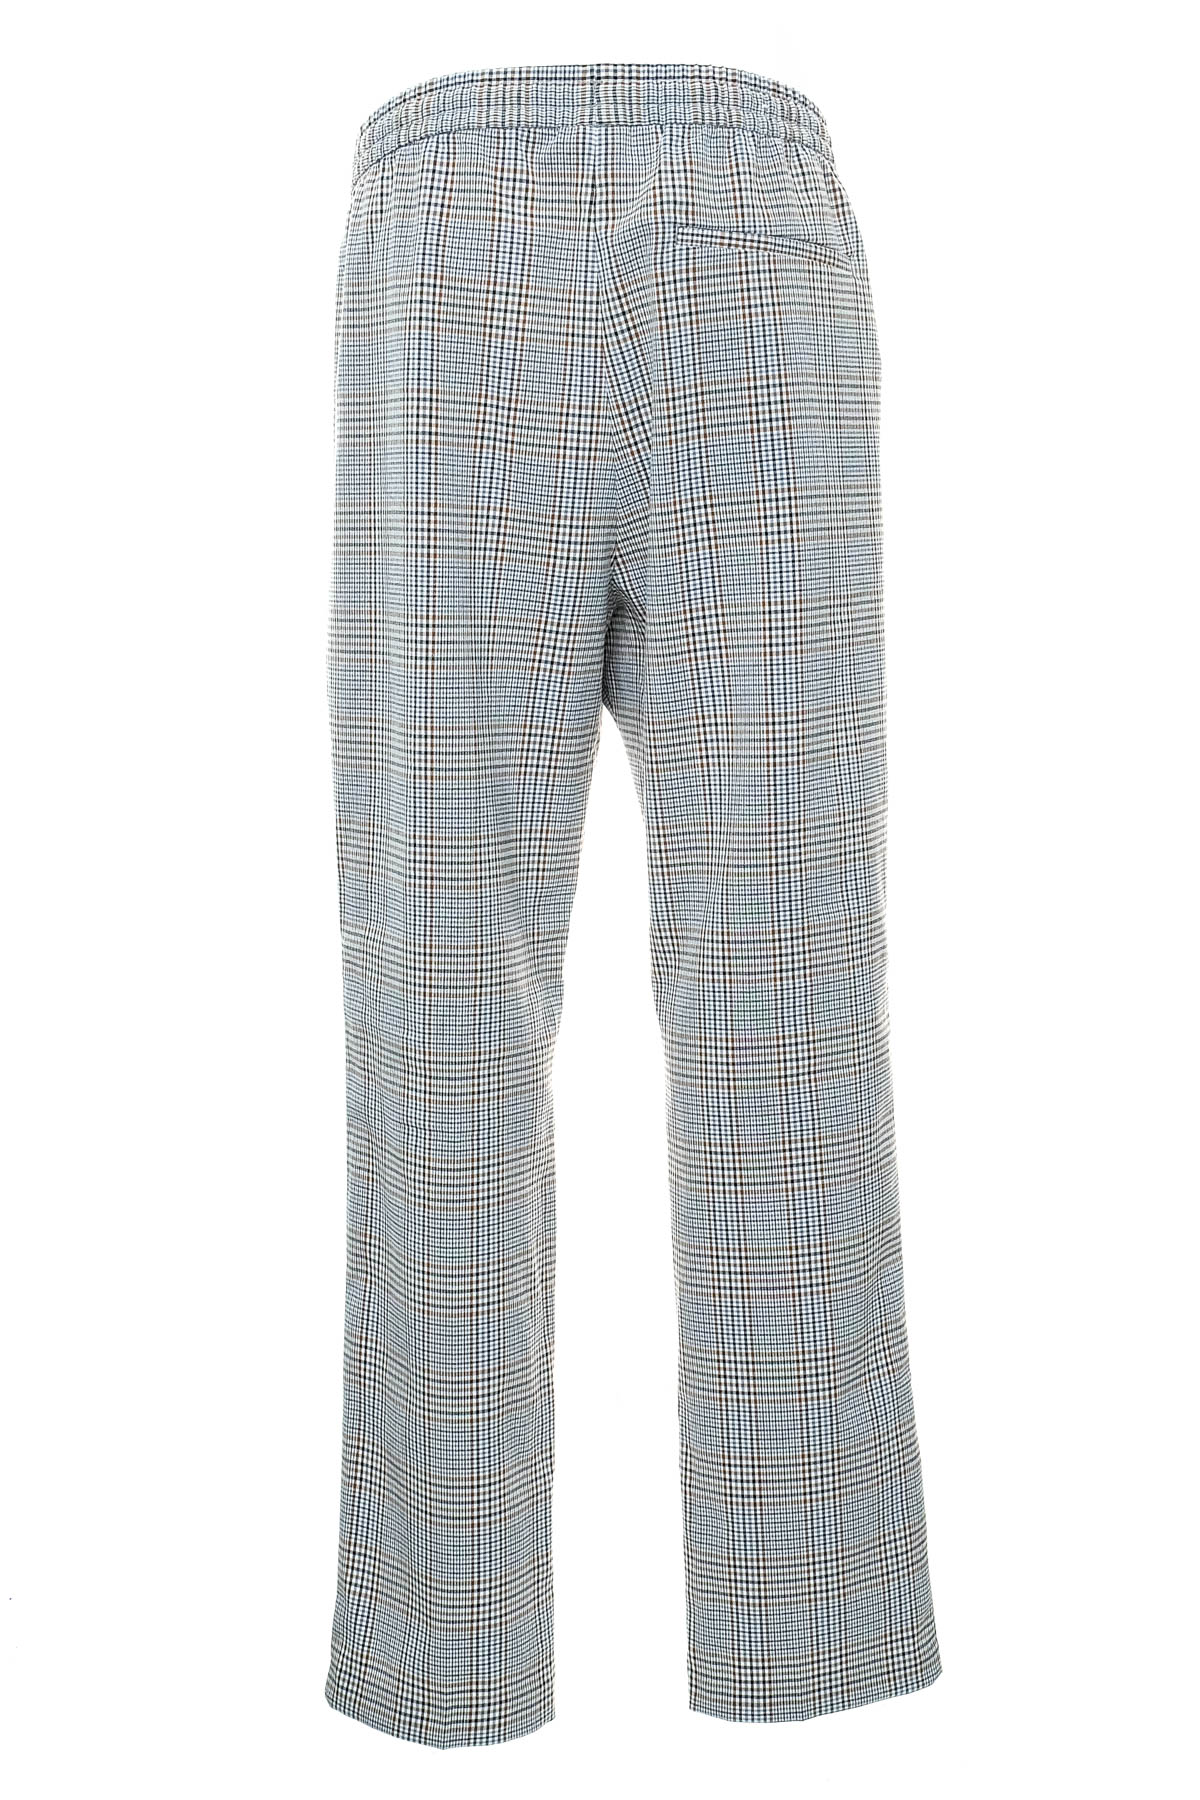 Men's trousers - H&M - 1